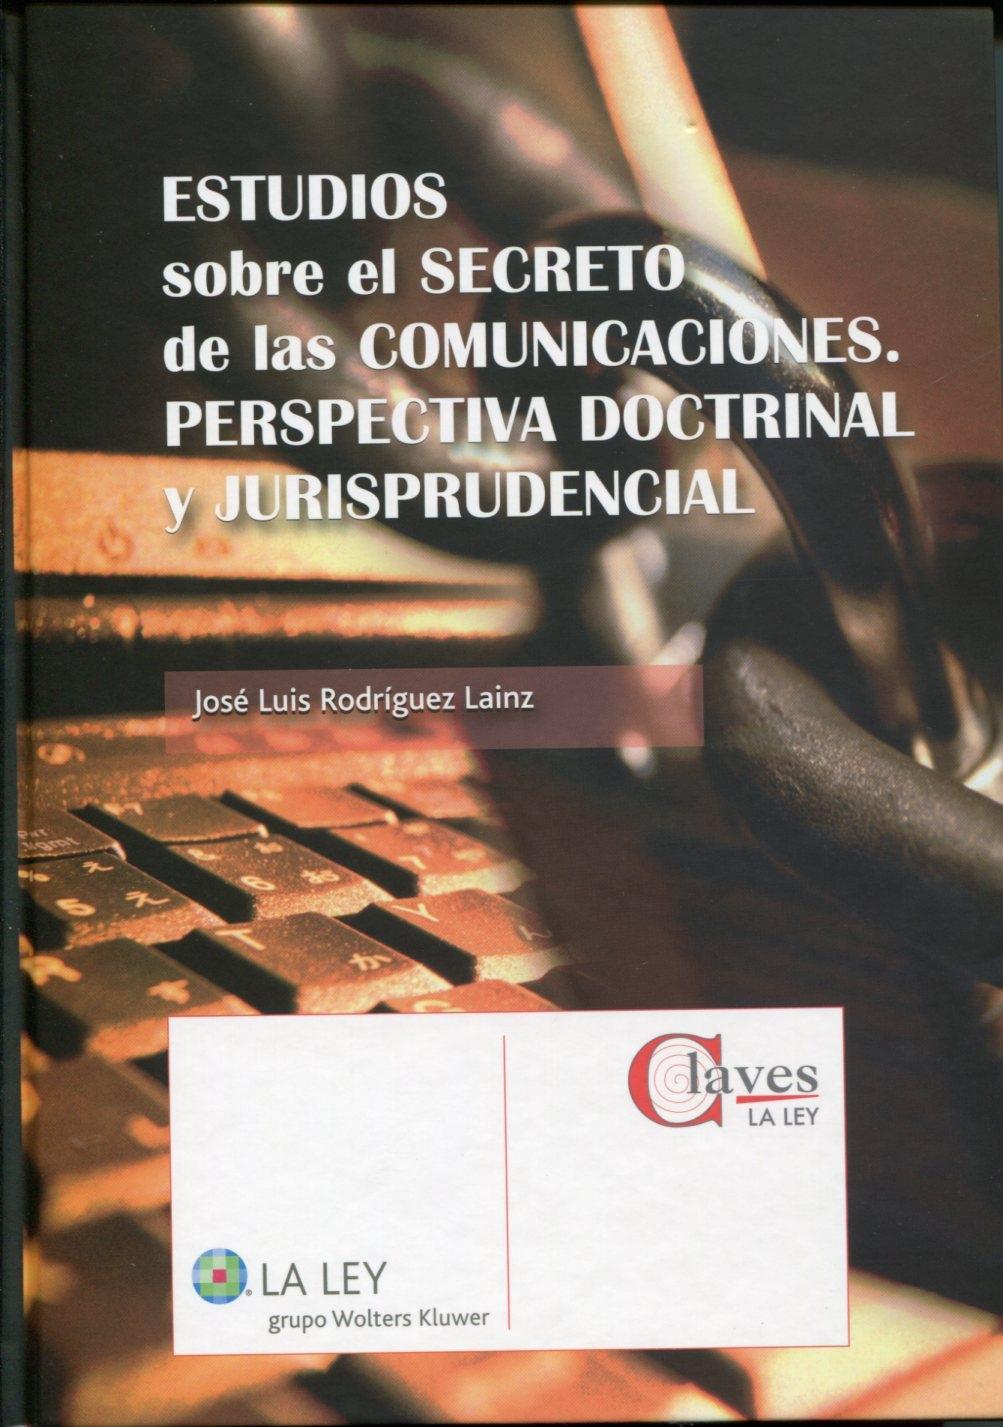 Estudios sobre el secreto de las comunicaciones "Perspectiva doctrinal y jurisprudencial"